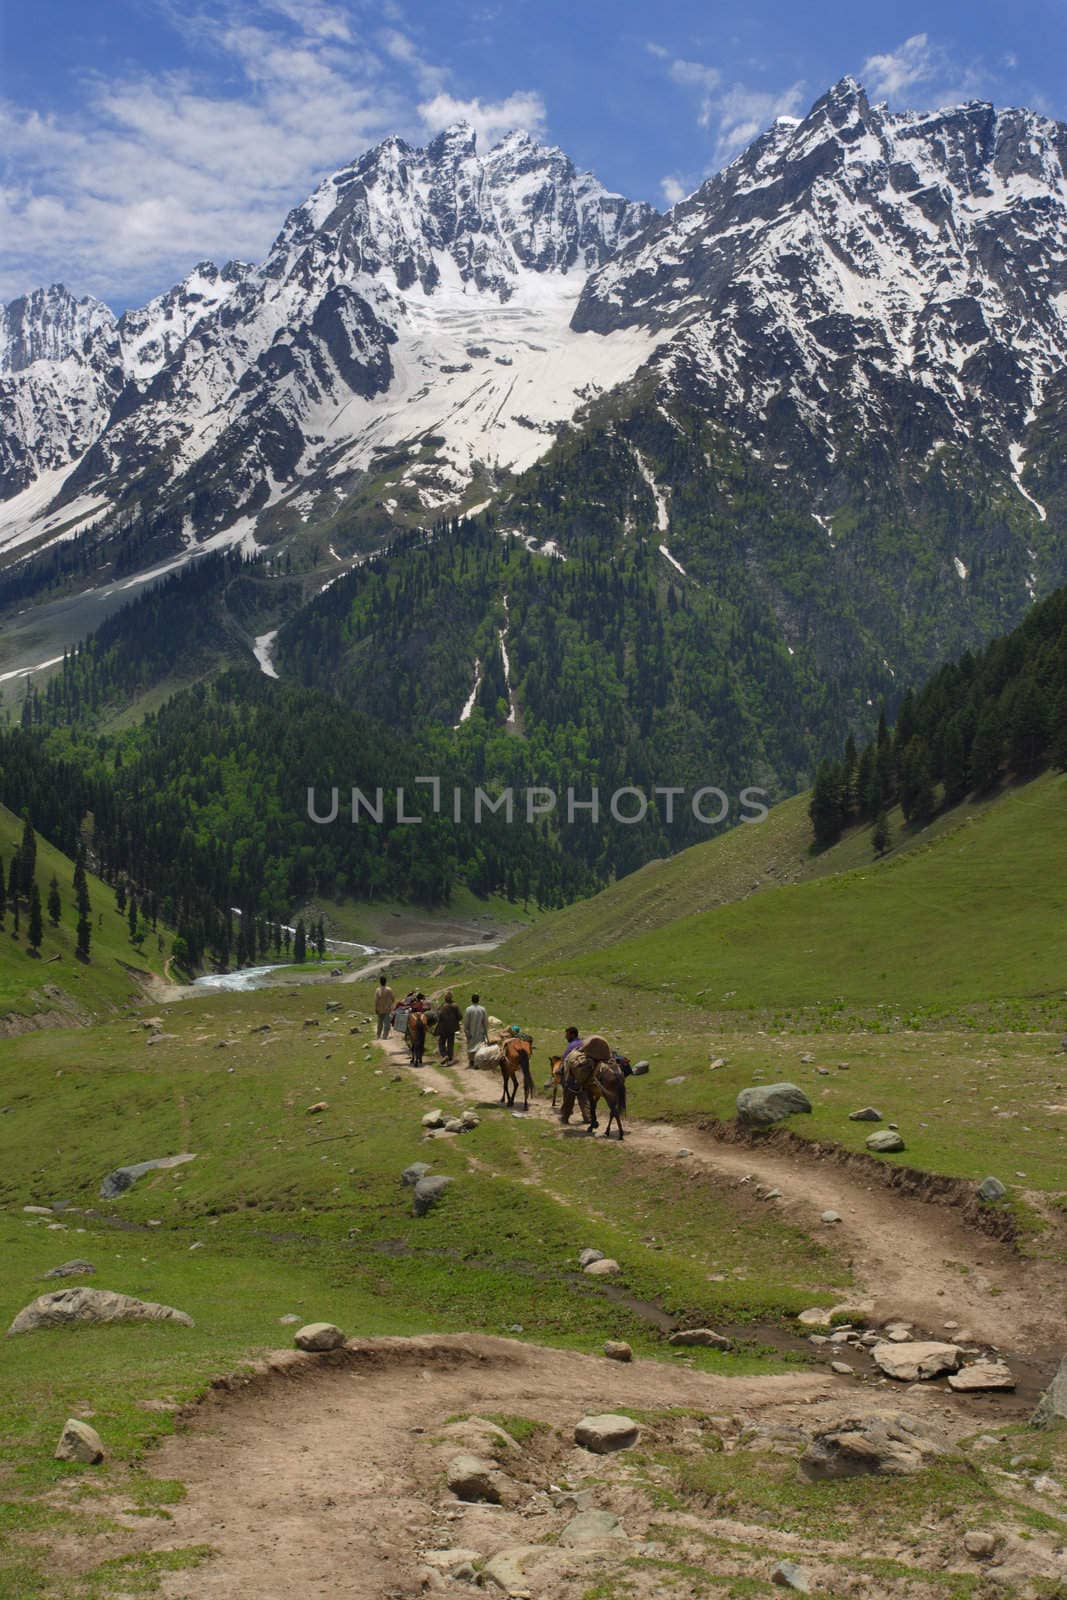 Four men and four horses follow the path towards the Himalayas
